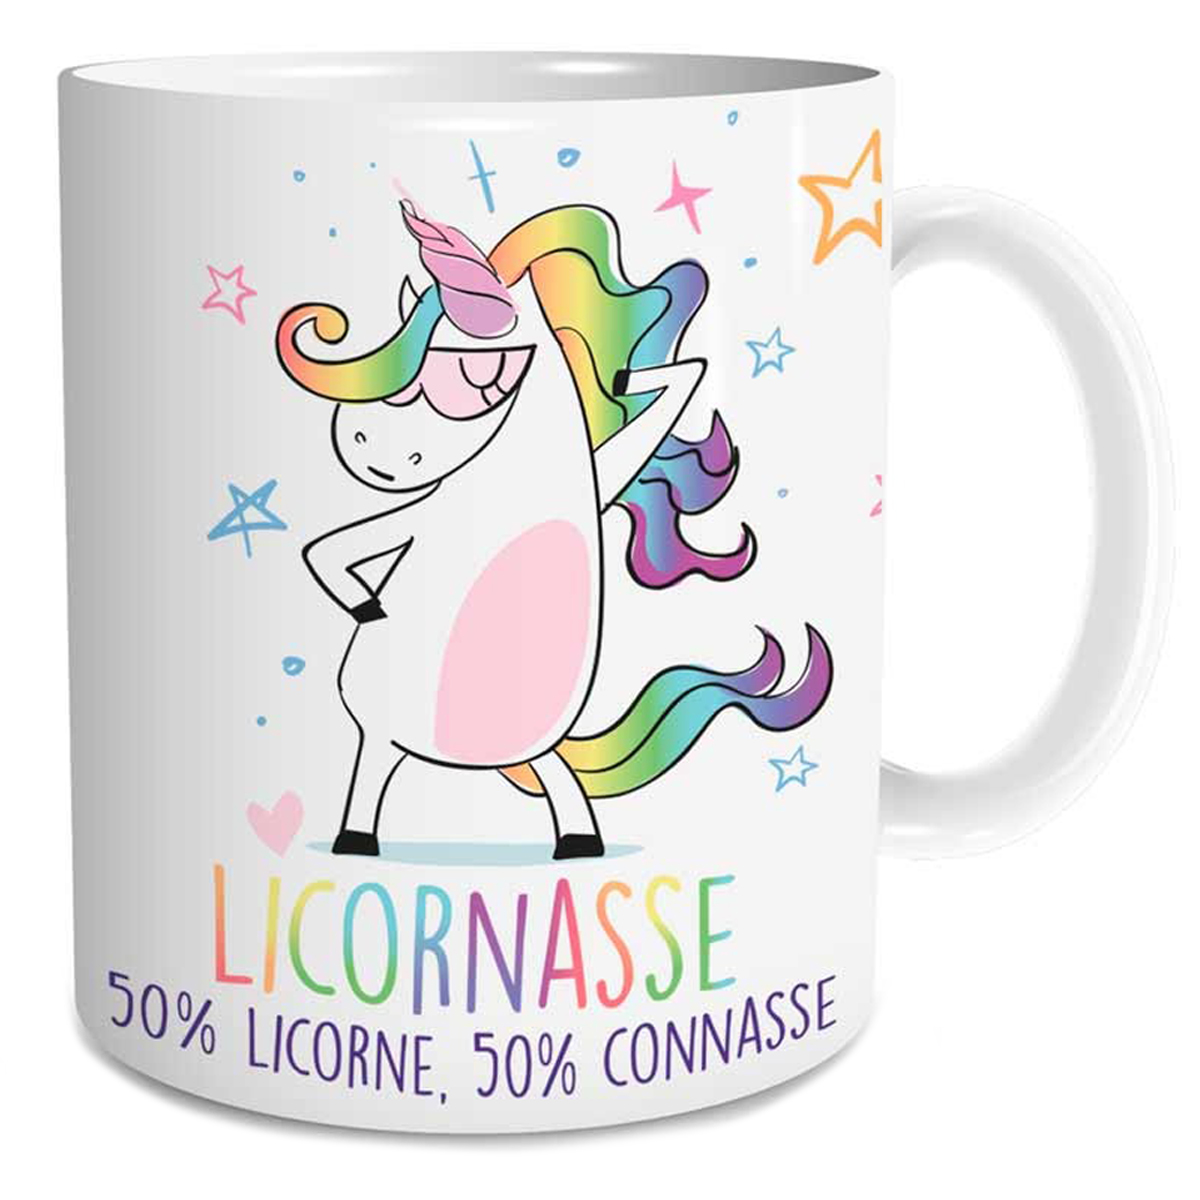 Mug céramique \'Licornes Mania\' (Licornasse 50% licorne, 50% connasse) - 95x80 mm - [Q4122]